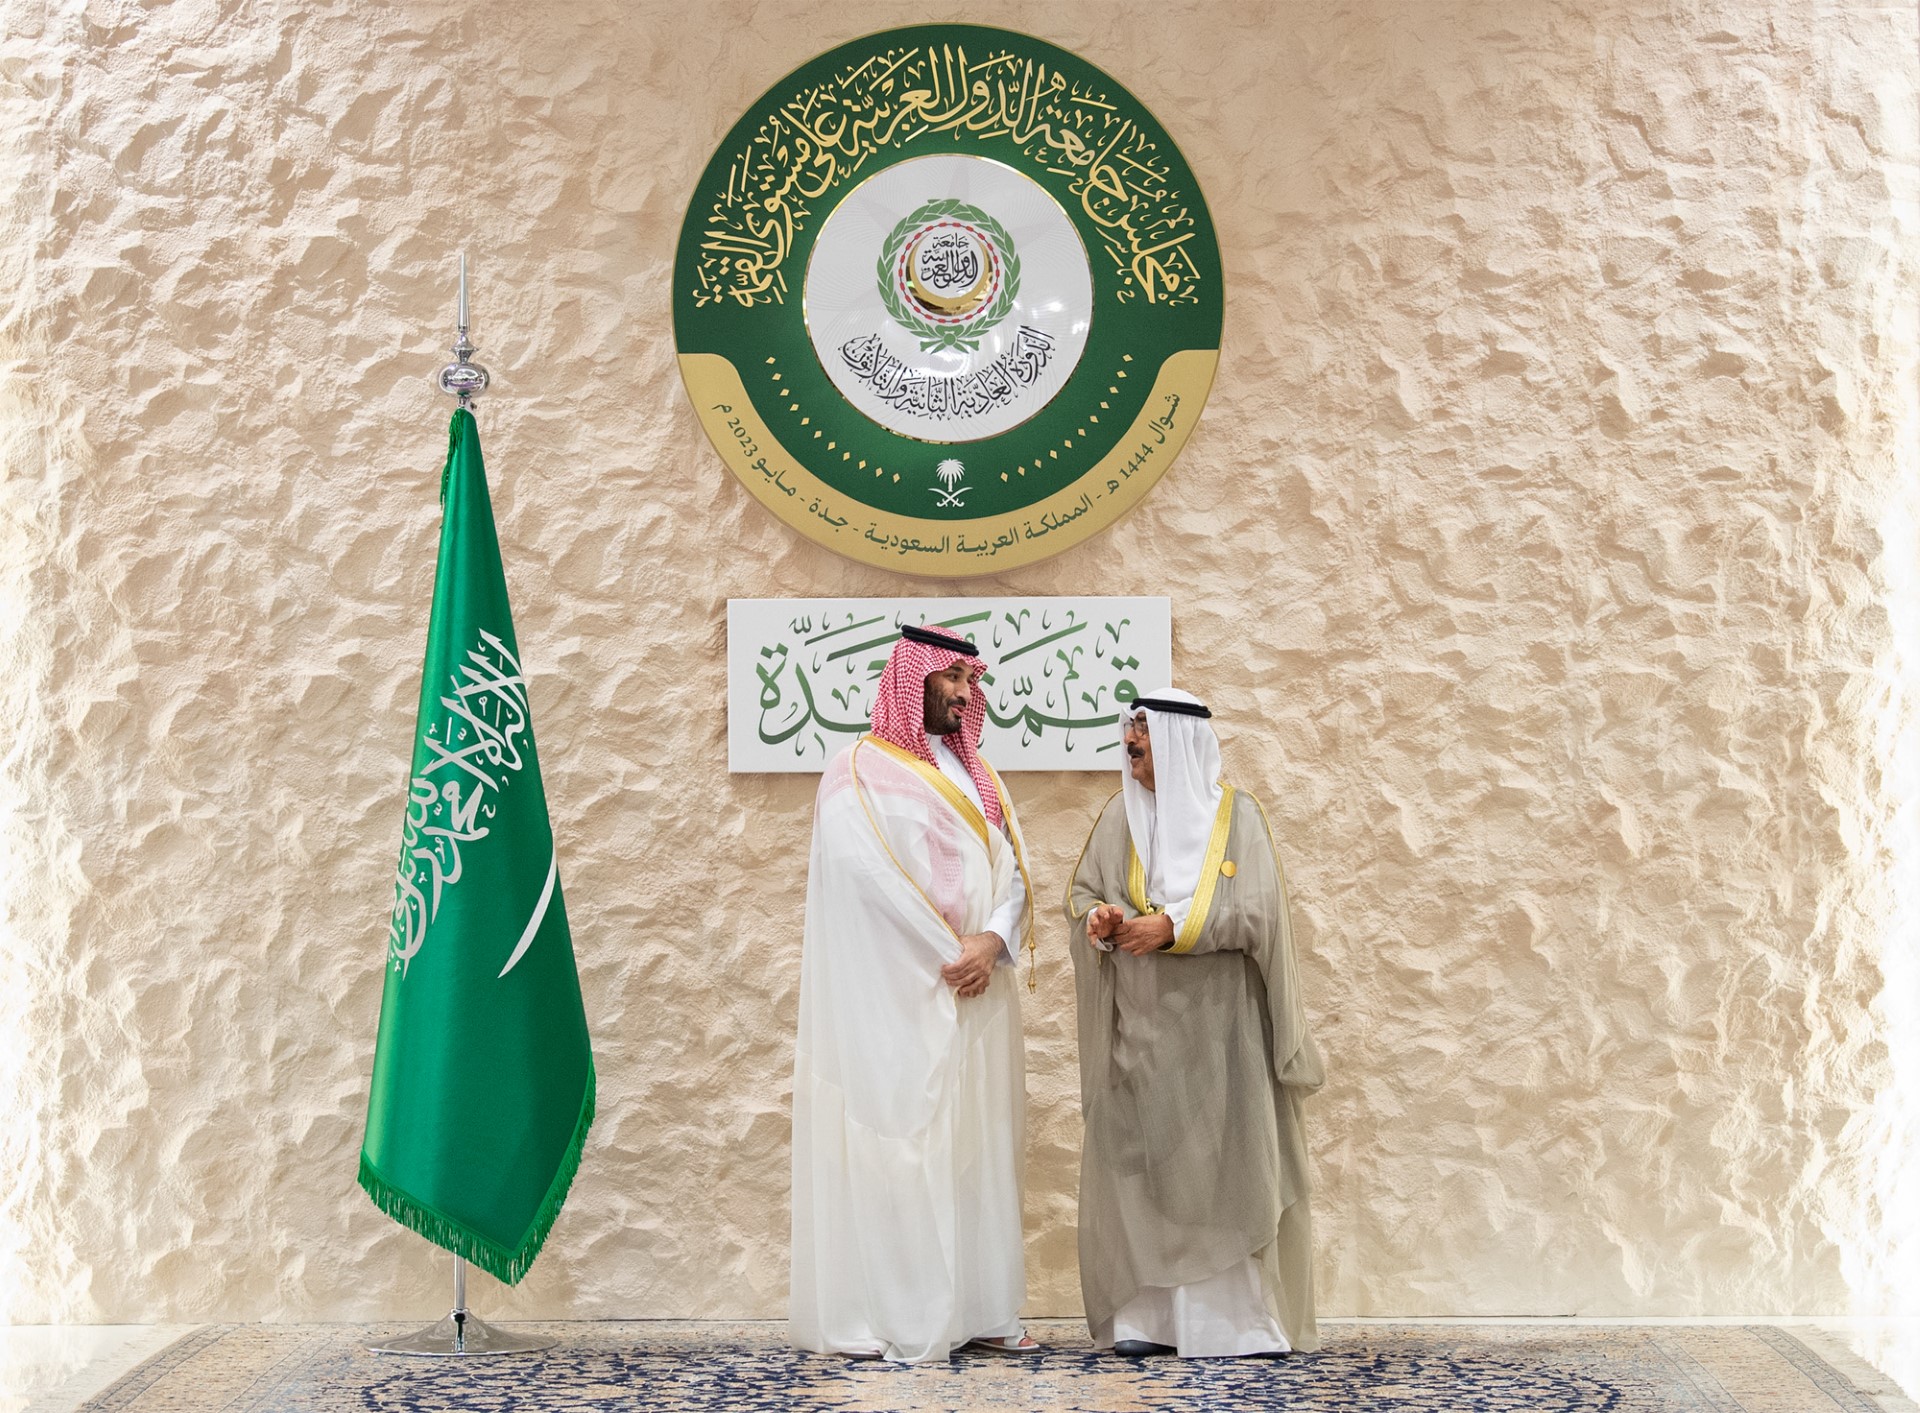 Le représentant de Son Altesse l'Emir du pays, Son Altesse le Prince héritier, rencontre le Prince héritier saoudien, en marge du Sommet arabe. (19-05-2023).